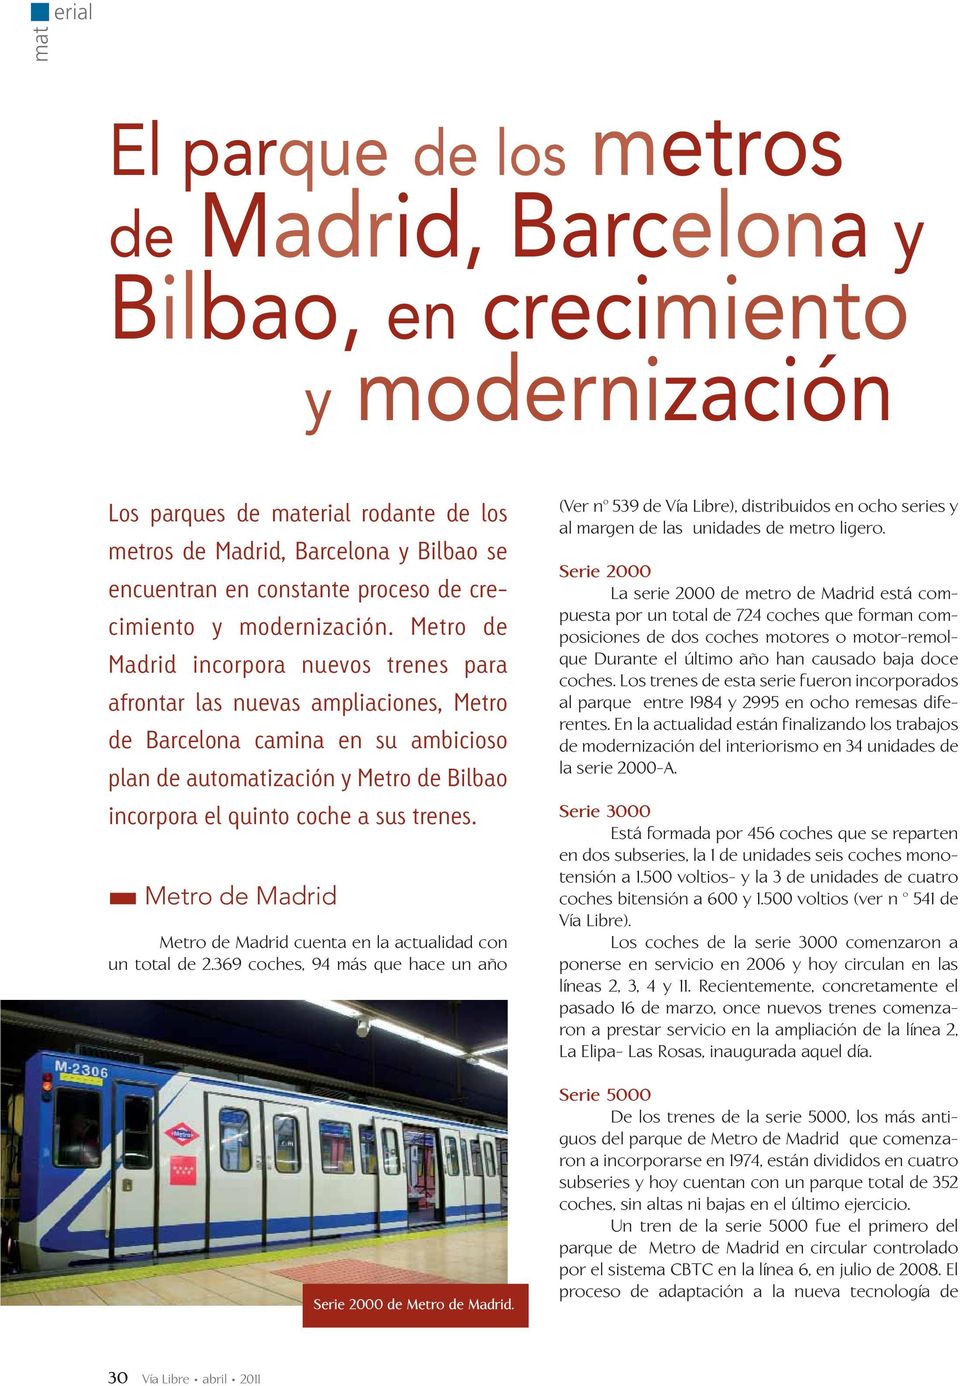 Madrid incorpora nuevos trenes para afrontar las nuevas ampliaciones, Metro de Barcelona camina en su ambicioso plan de automatización y Bilbao incorpora el quinto coche a sus trenes.